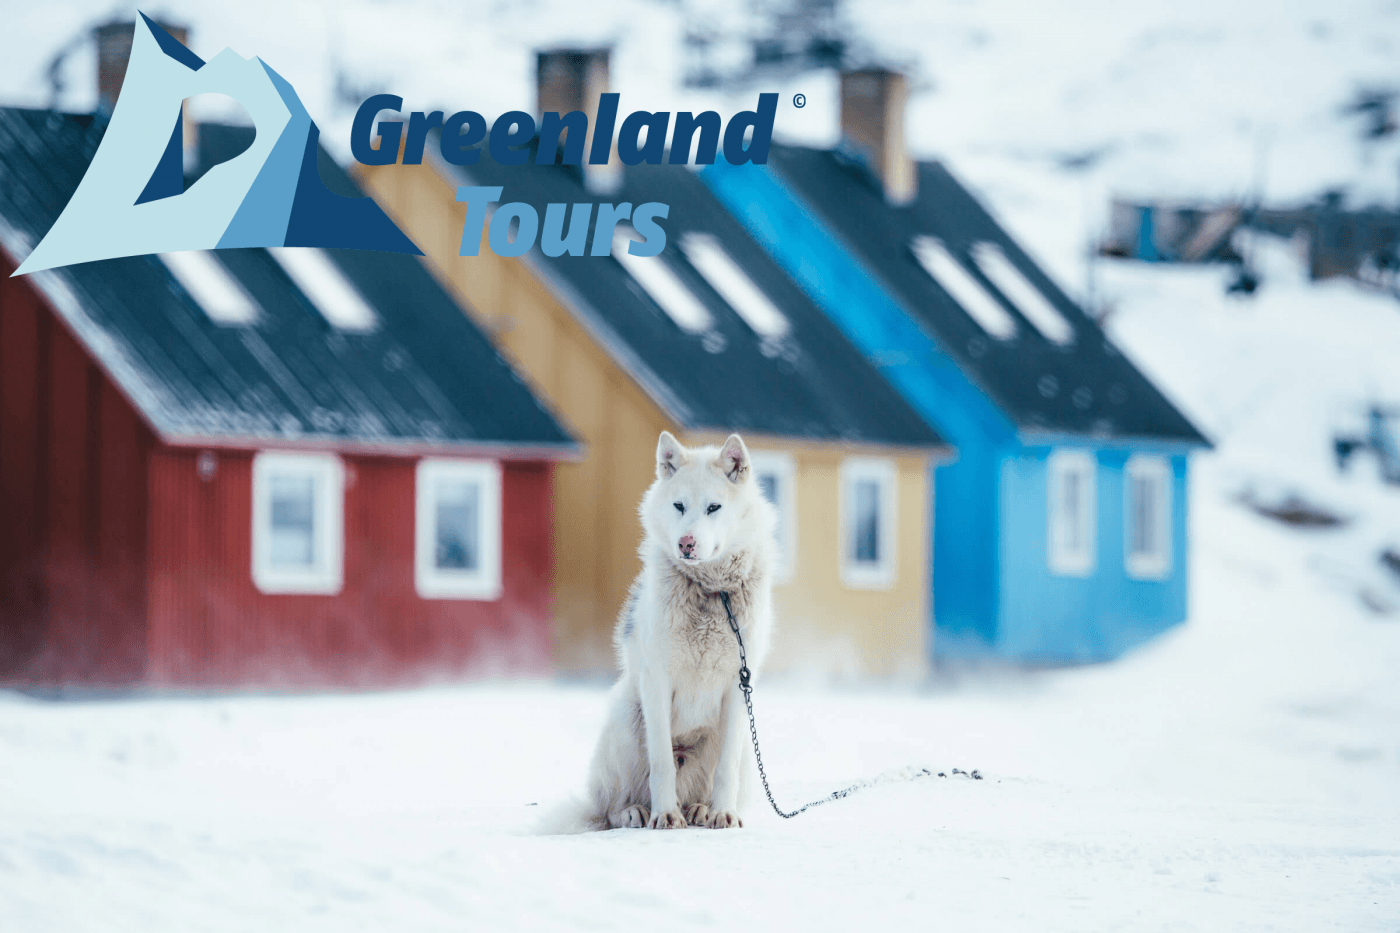 Greenland Tours – Frozen West